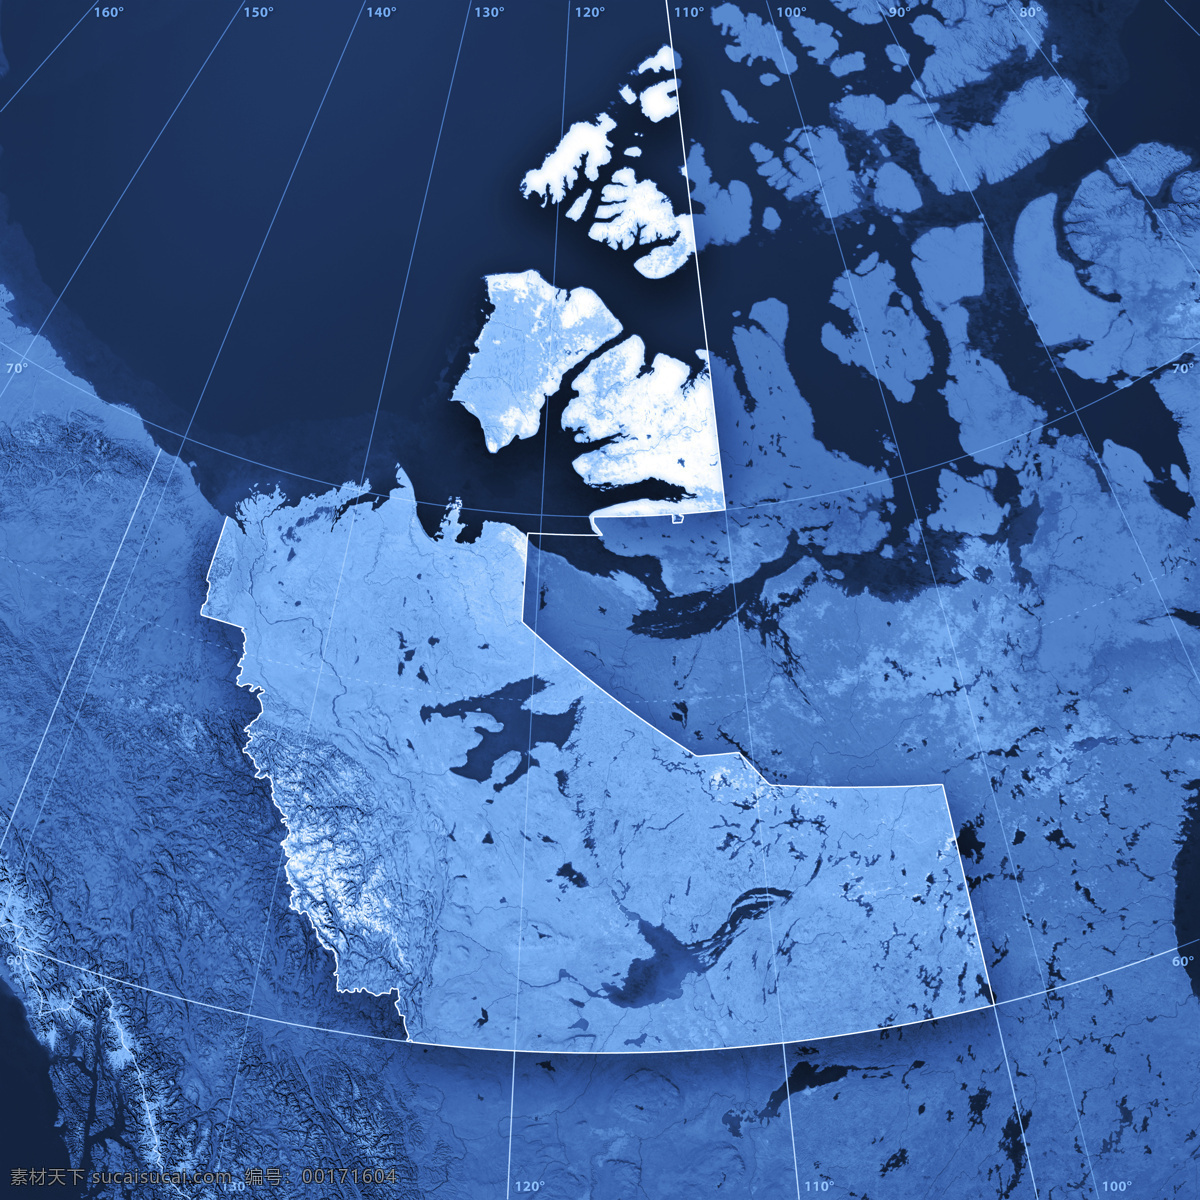 加拿大 地图 加拿大地图 蓝色地图 地图模板 经线 纬线 经度 纬度 地图图片 生活百科